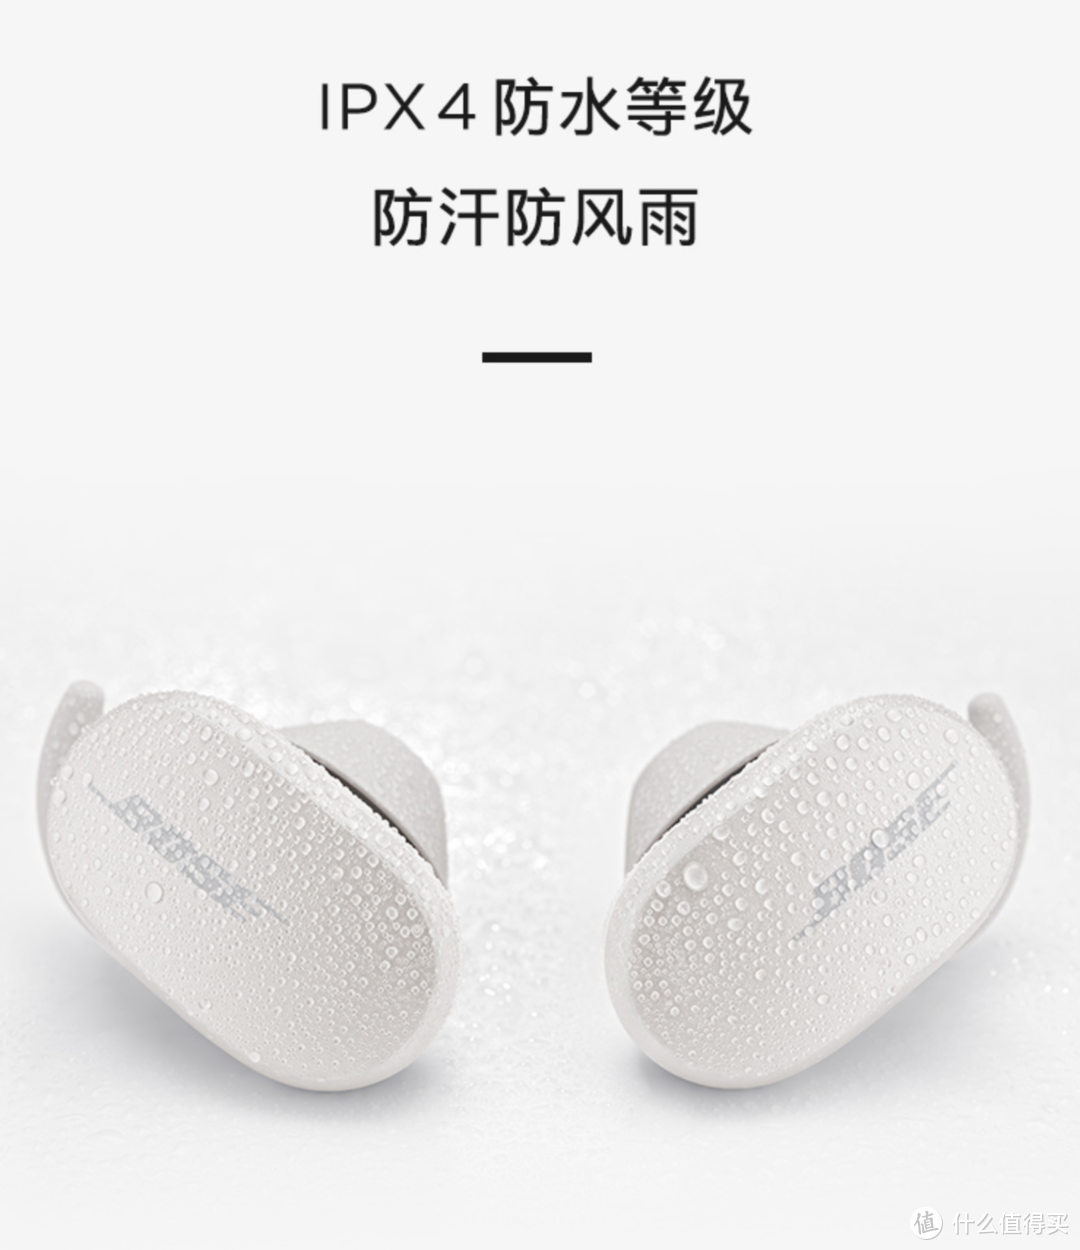 可能是第一篇 全新Bose Quietcomfort Earbud消噪耳塞的体验报告